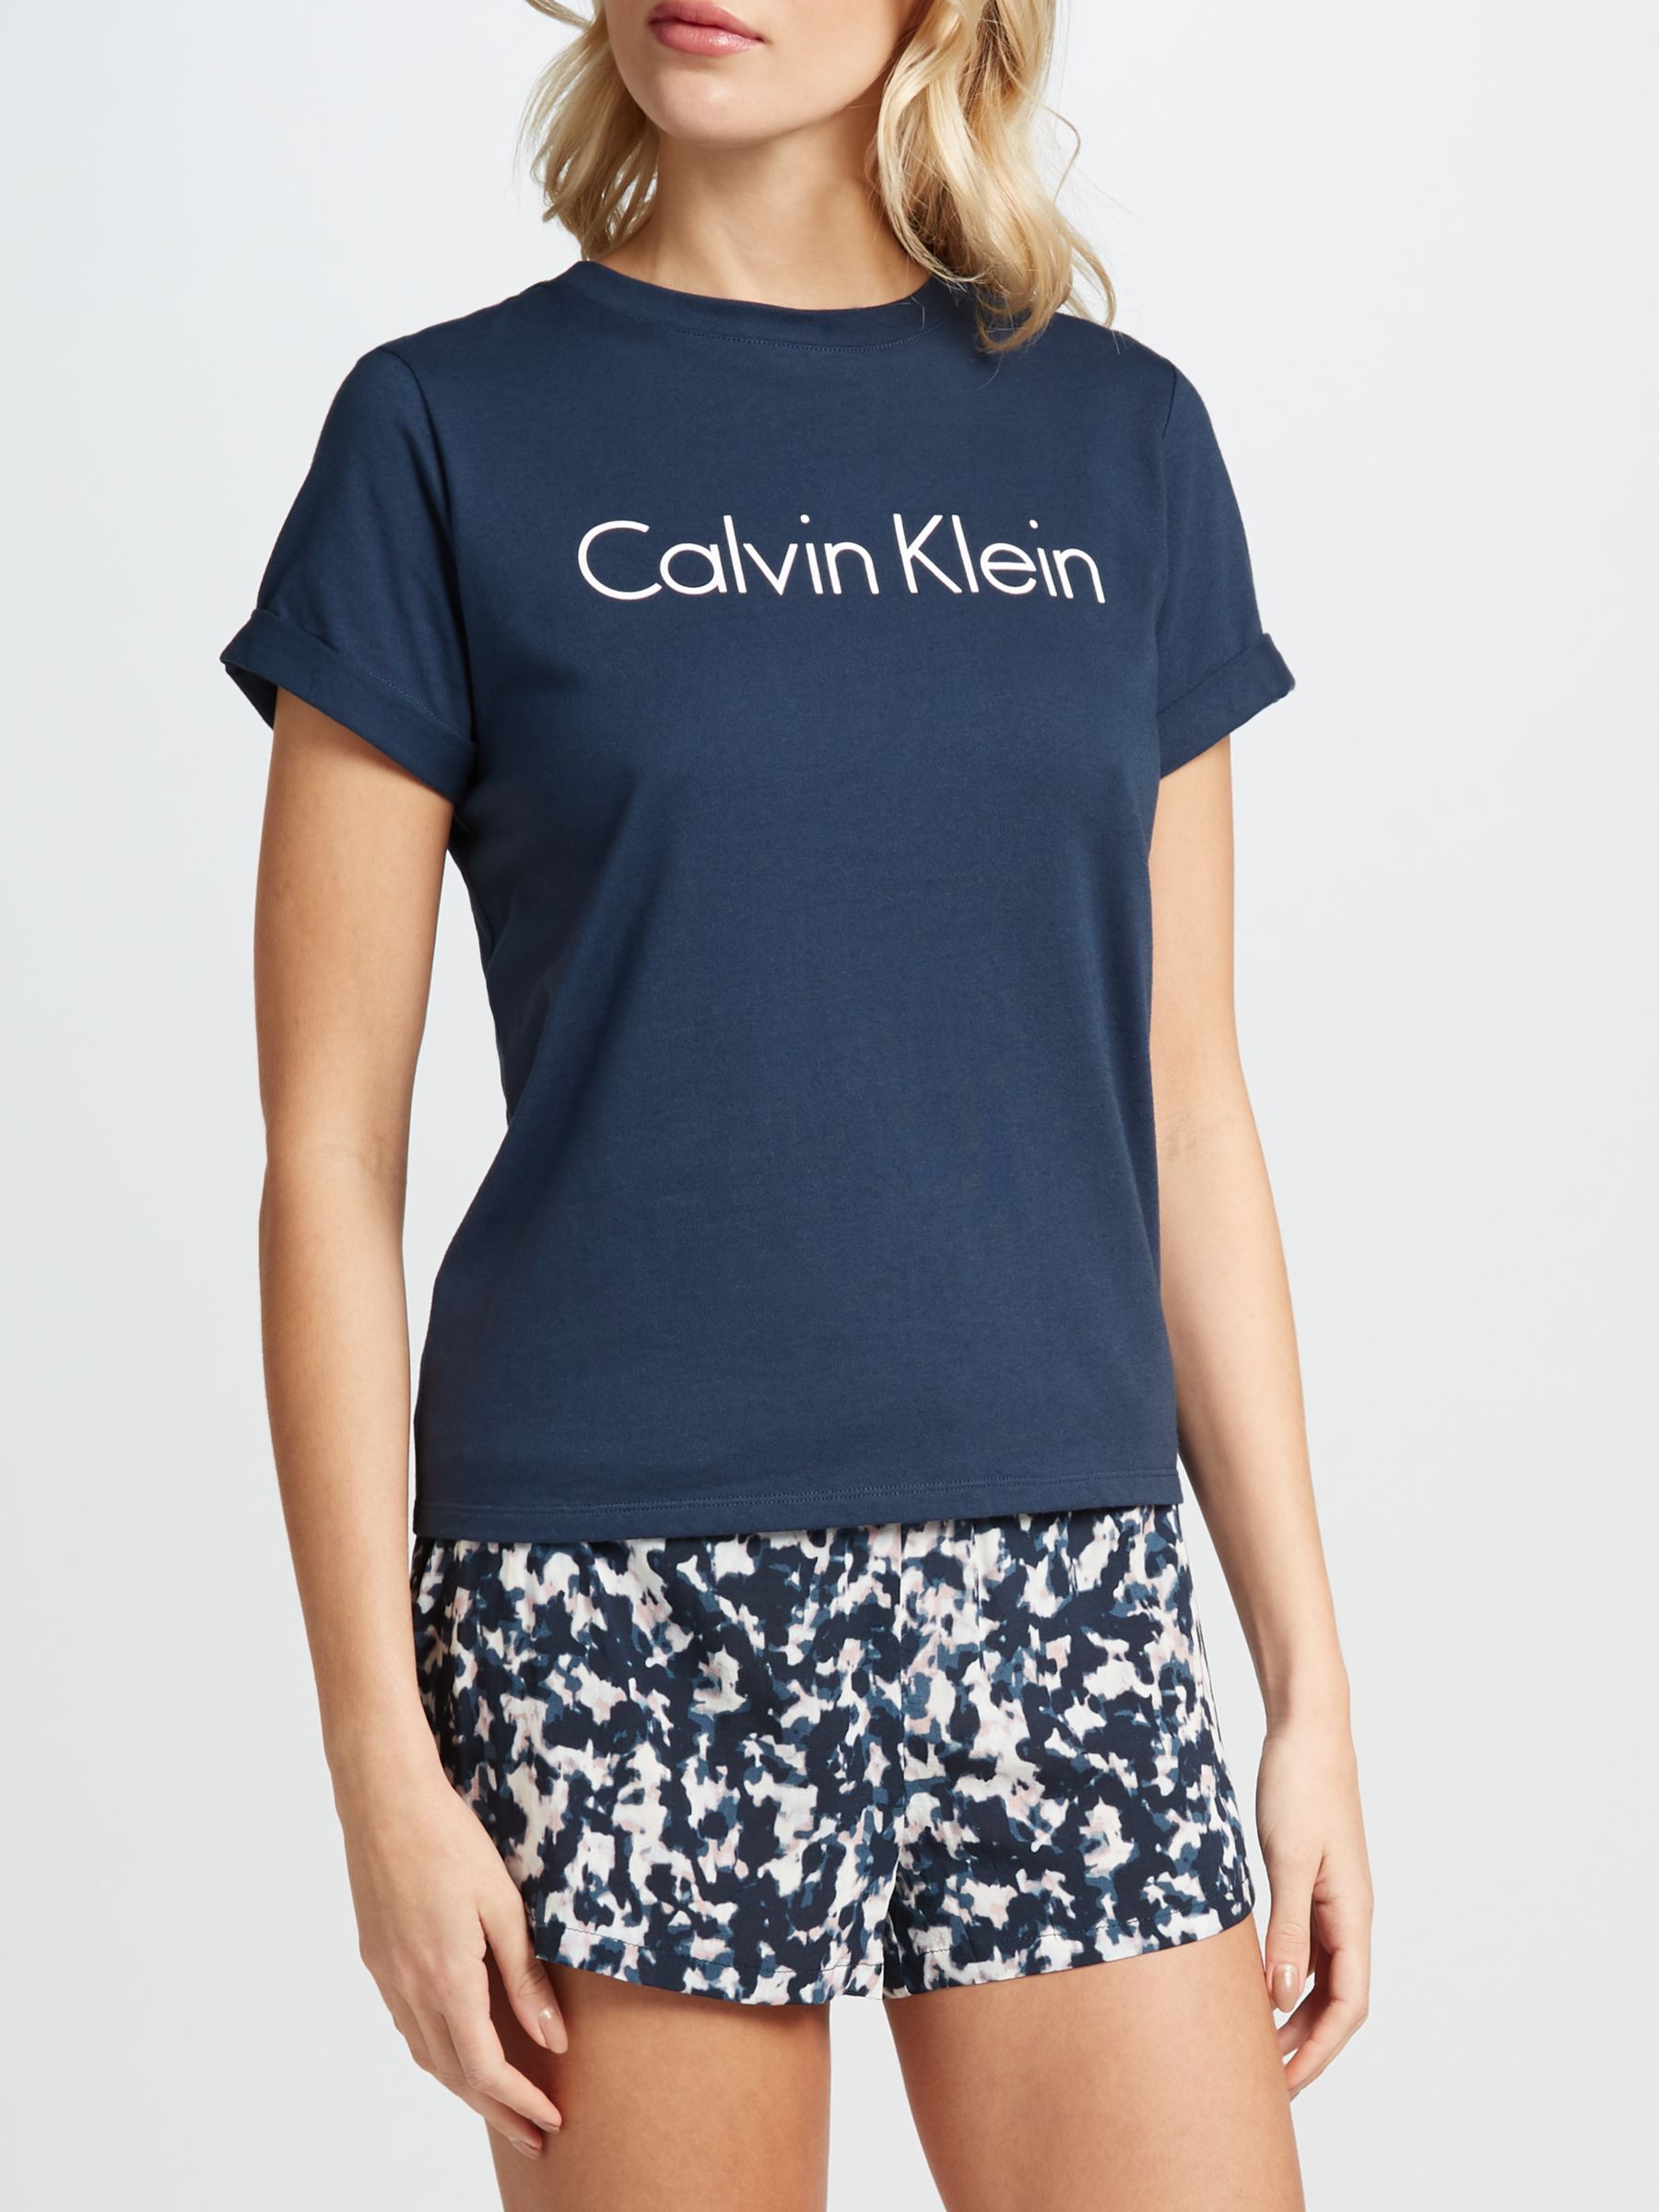 calvin klein sleepwear t shirt